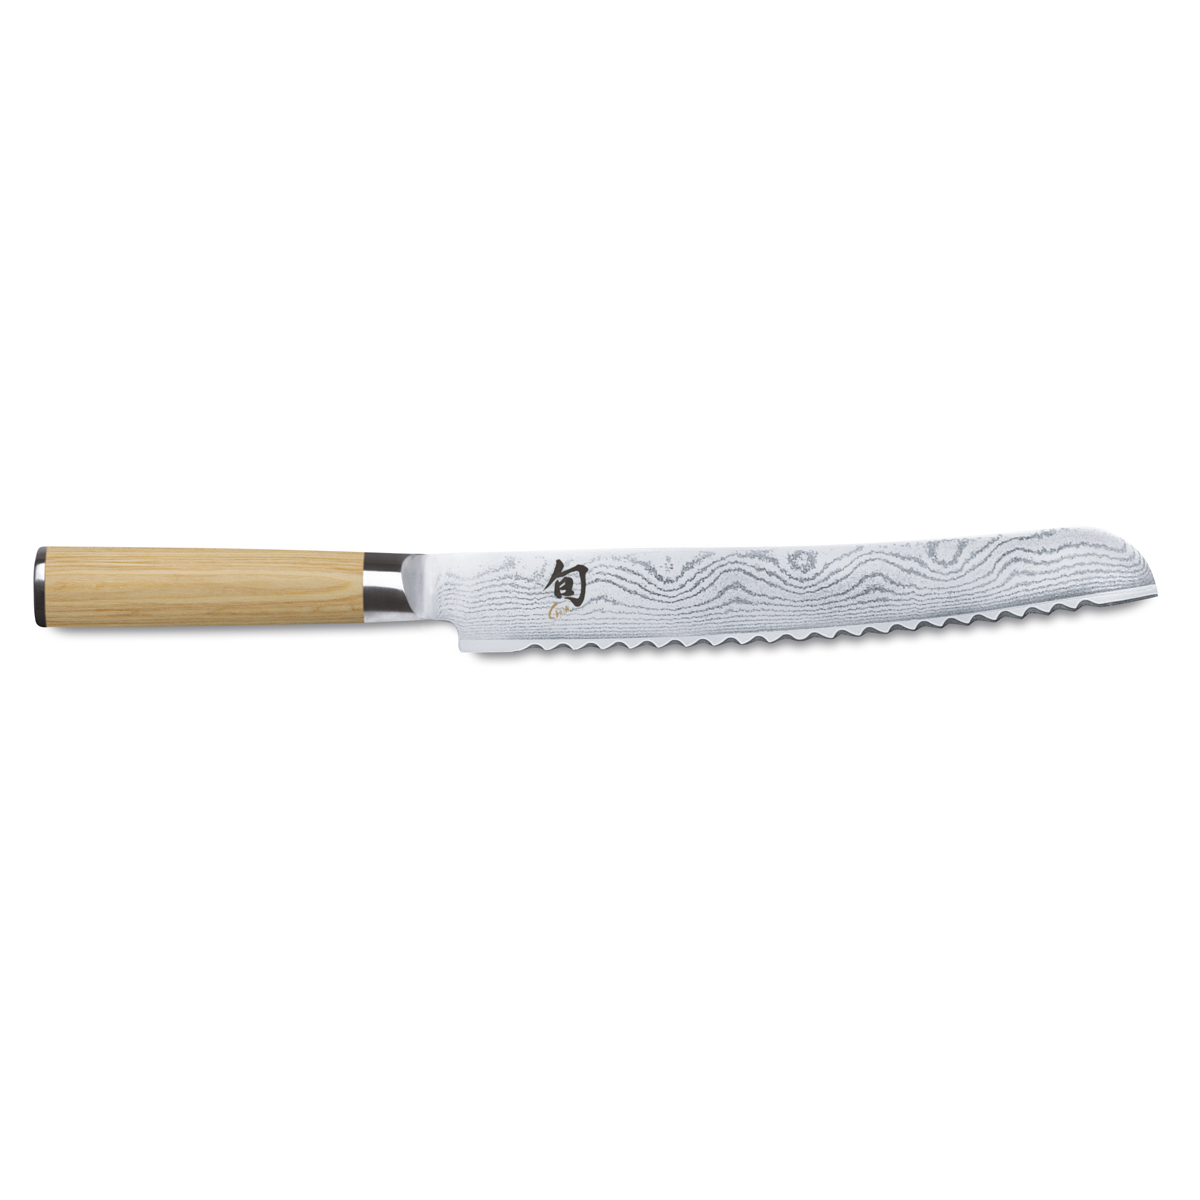 KAI Shun Classic White Brotmesser 23 cm / 32-lagiger Damaststahl mit Griff aus hellem Pakkaholz